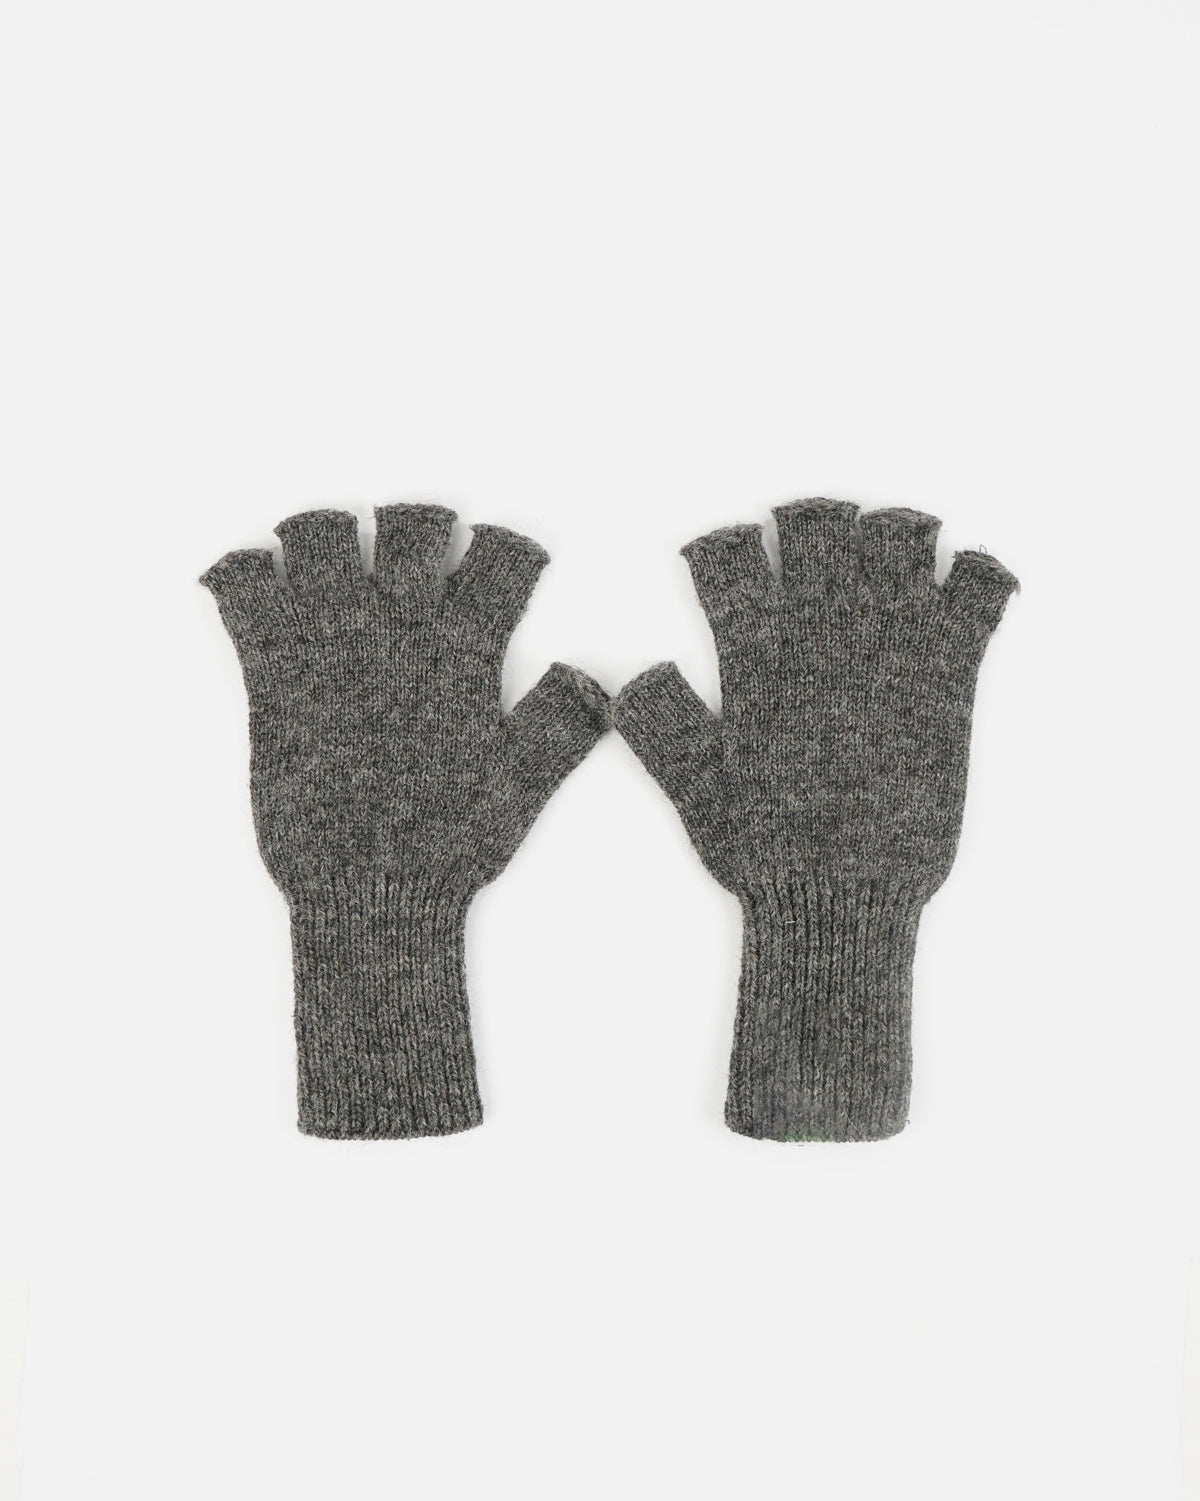 FGS Original Shetland Wool Fingerless Gloves